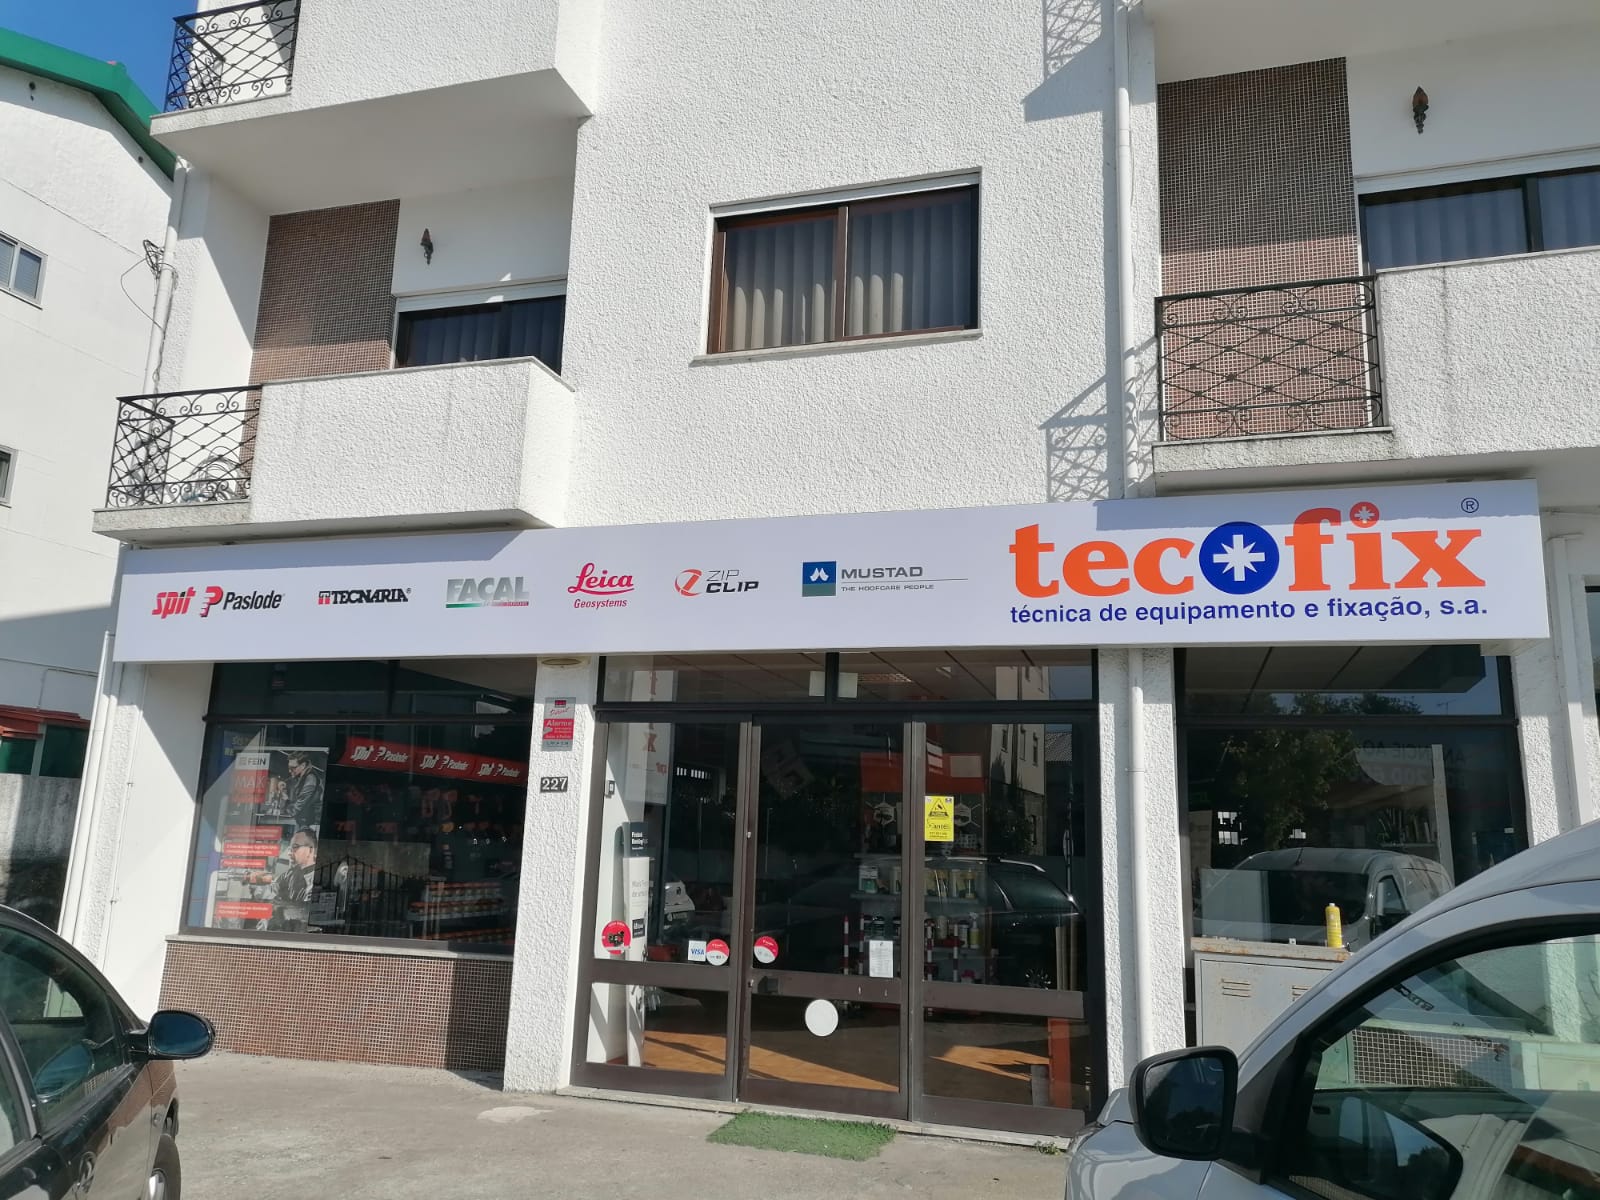 Tecofix Viseu - Store